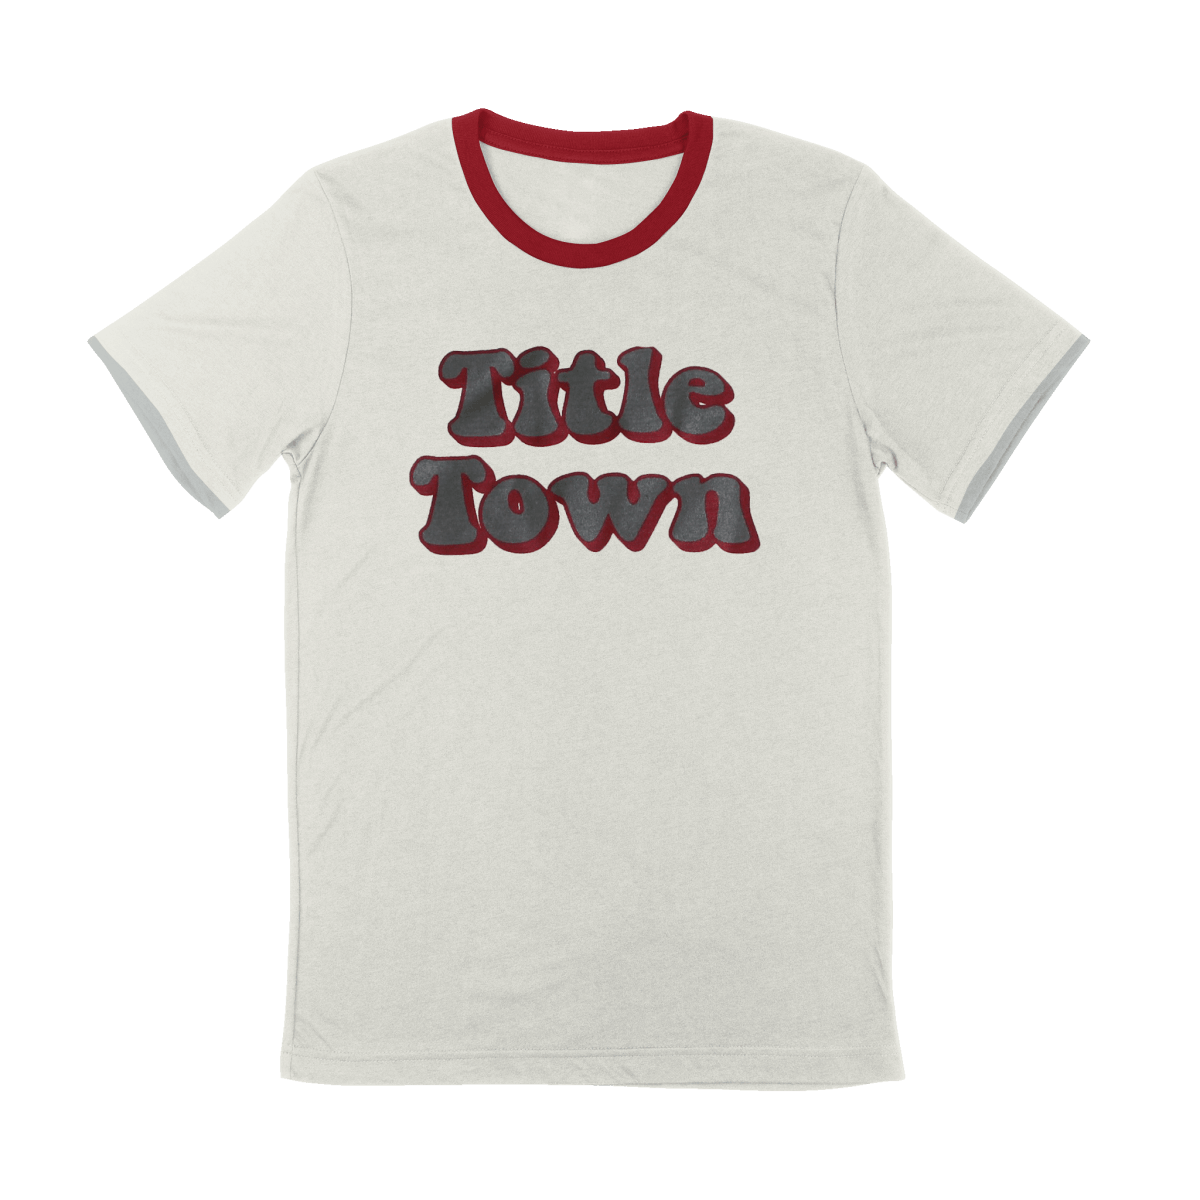 Title Town Bubble Letters Ringer T-Shirt - Shop B-Unlimited